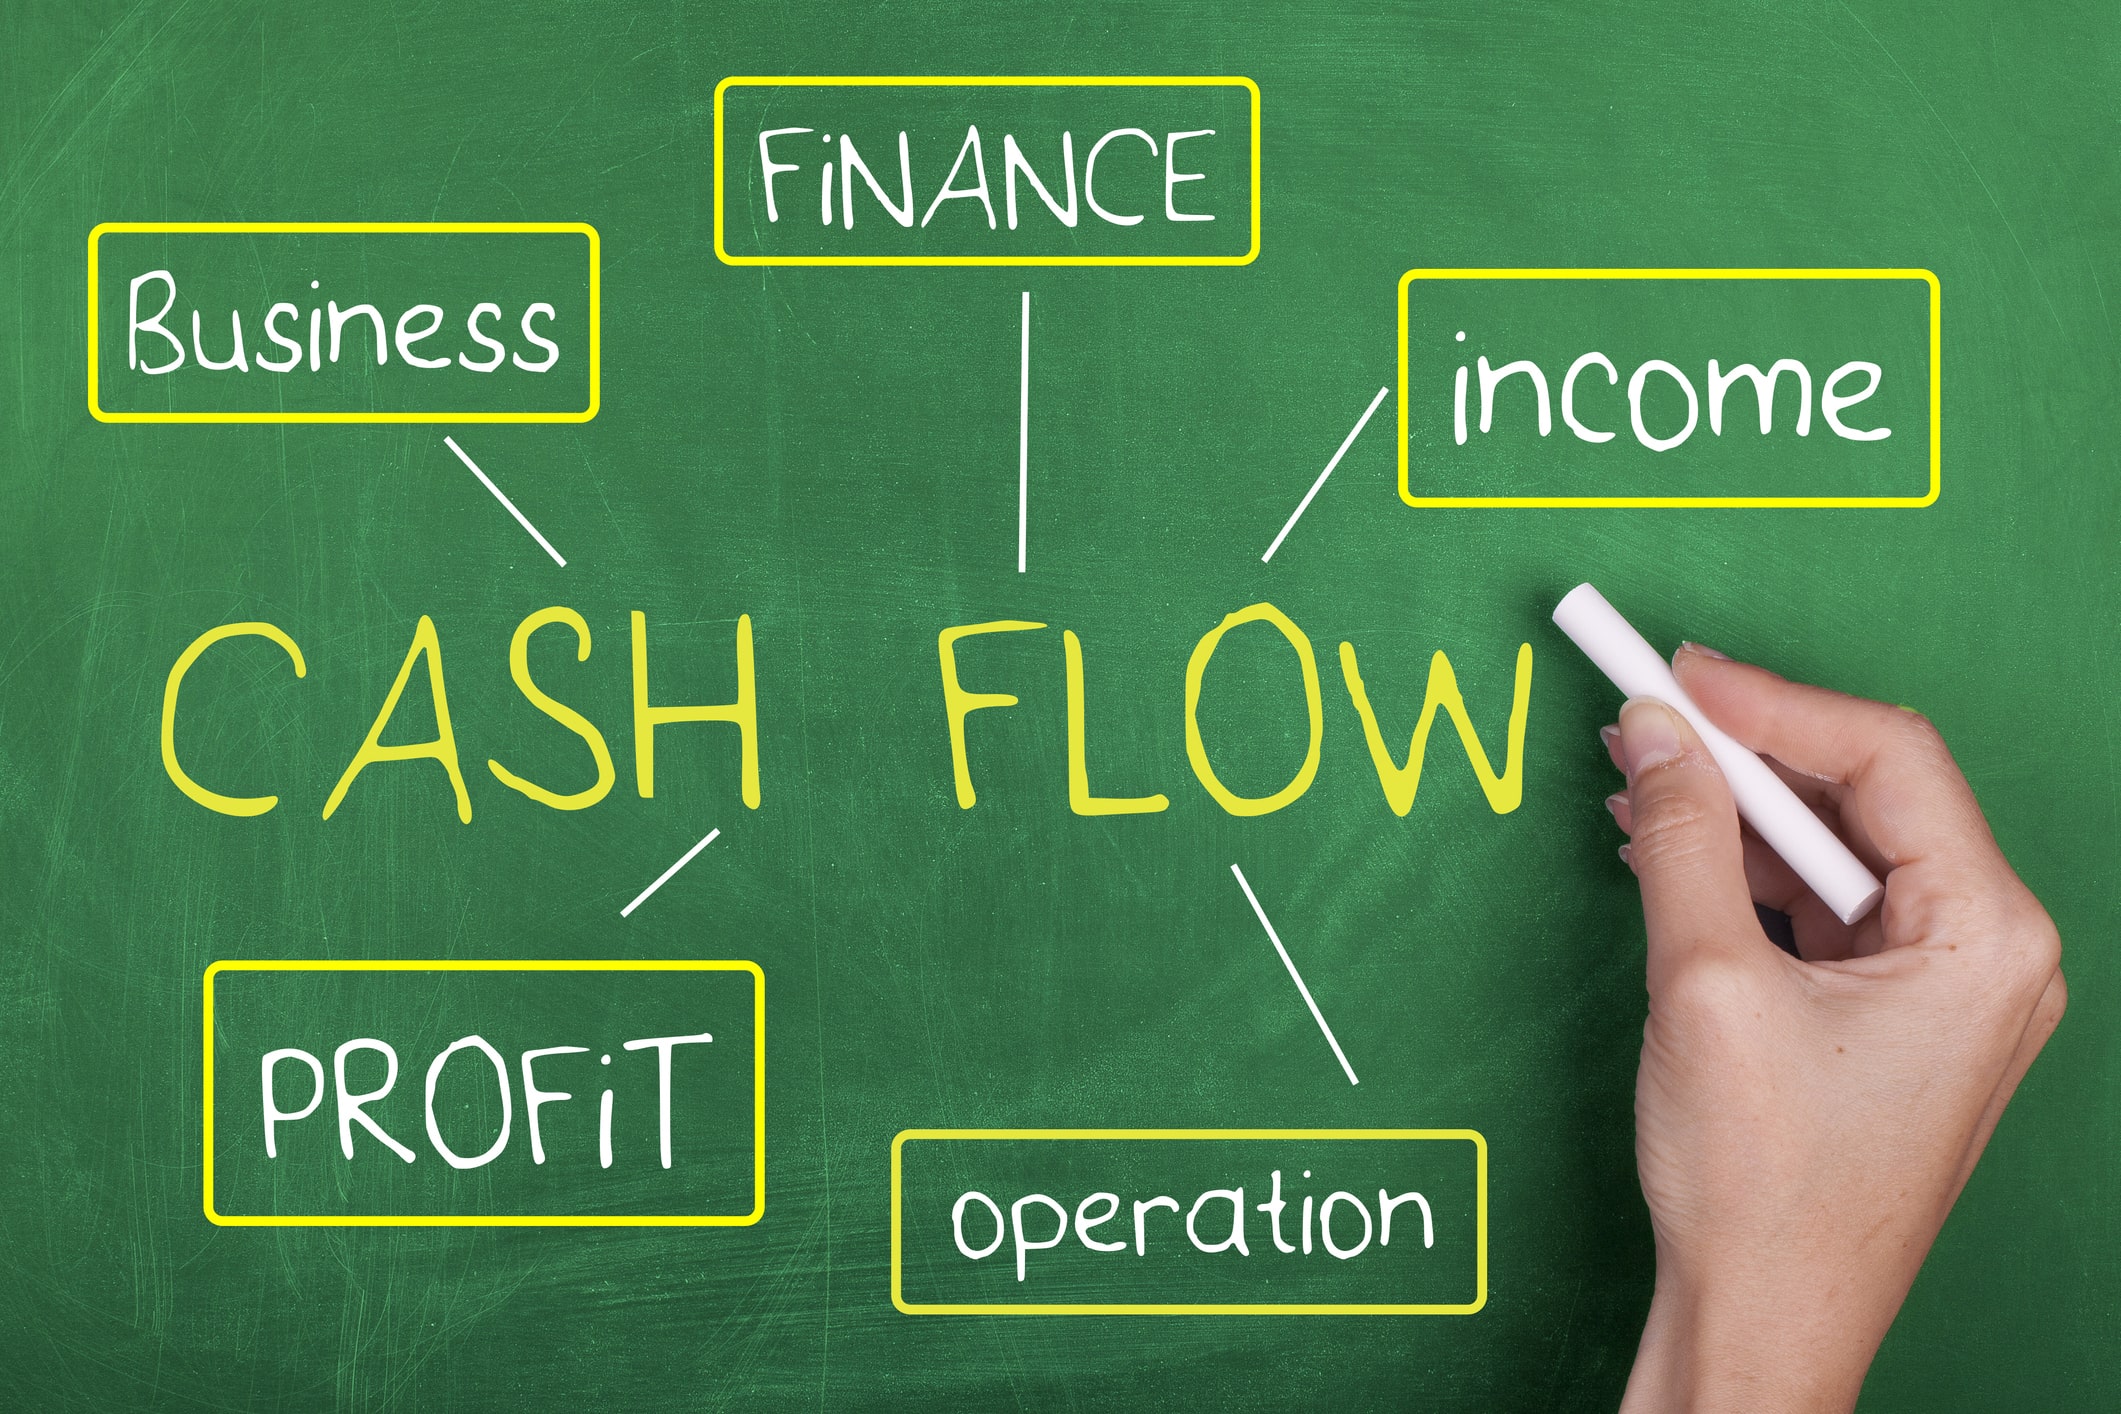 Cash flow process